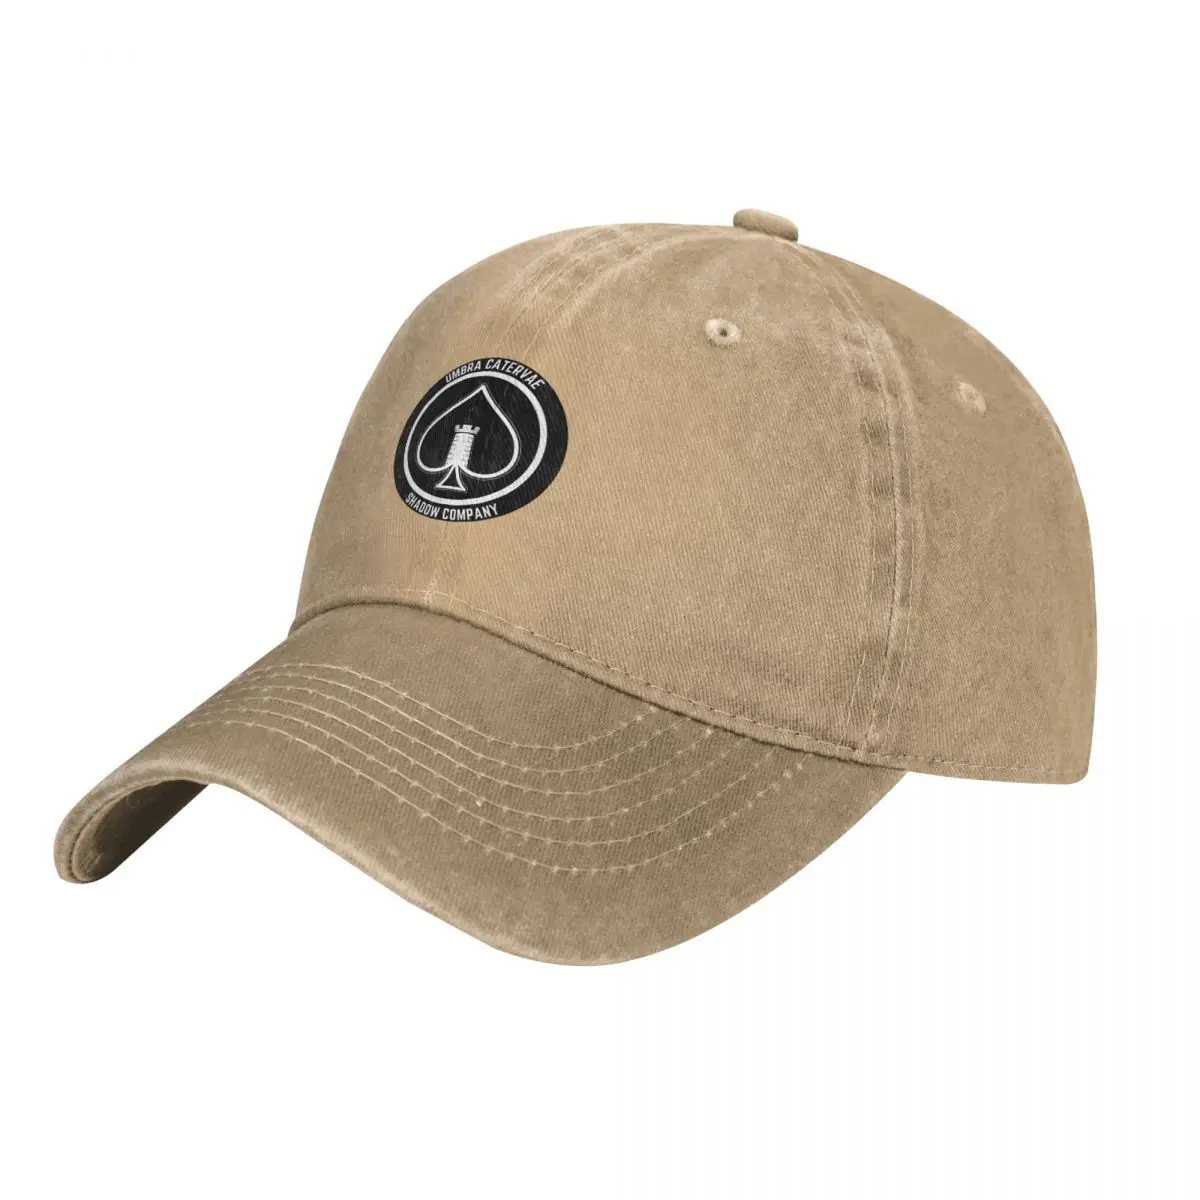 Shadow Company Emblem Cap Cowboy Hat bucket hat Sun cap military tactica... - £17.14 GBP